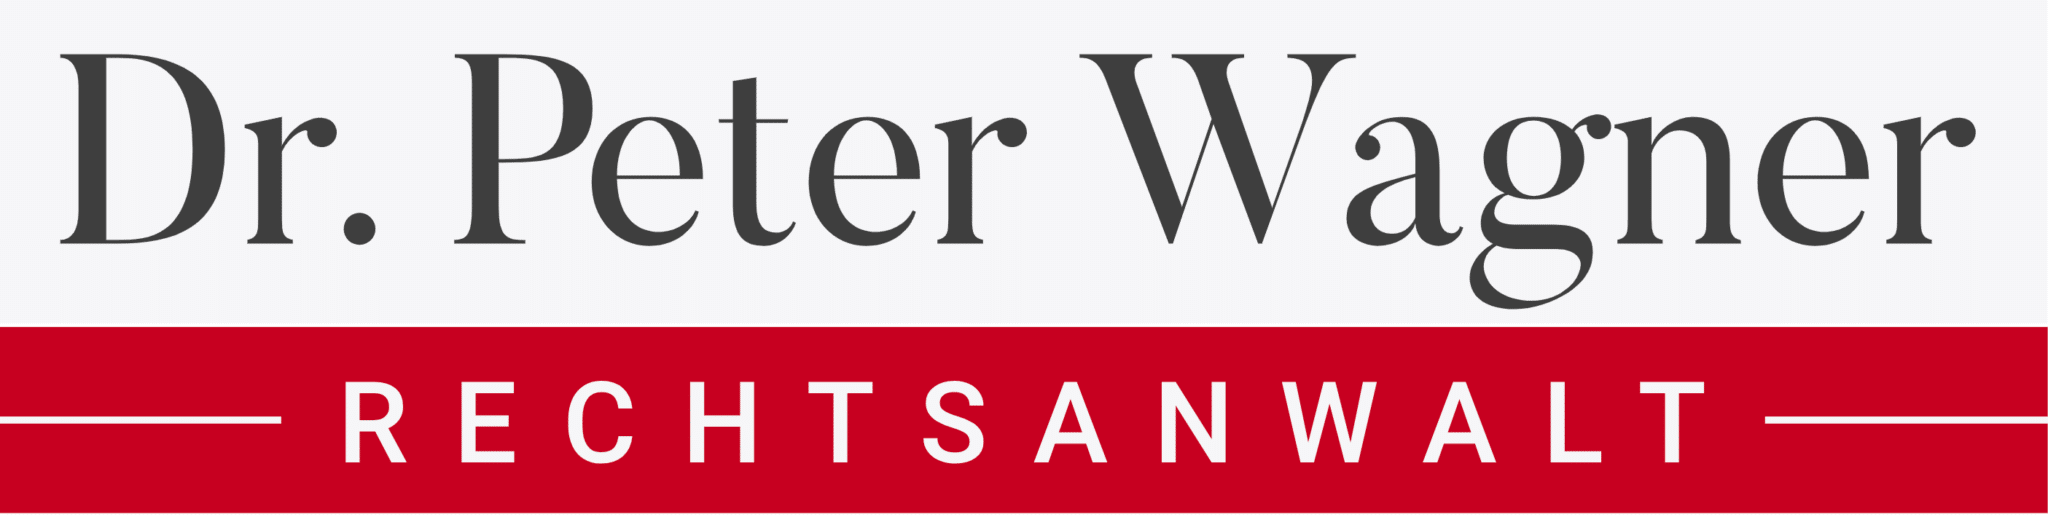 Anwalt Dr. Peter Wagner Logo